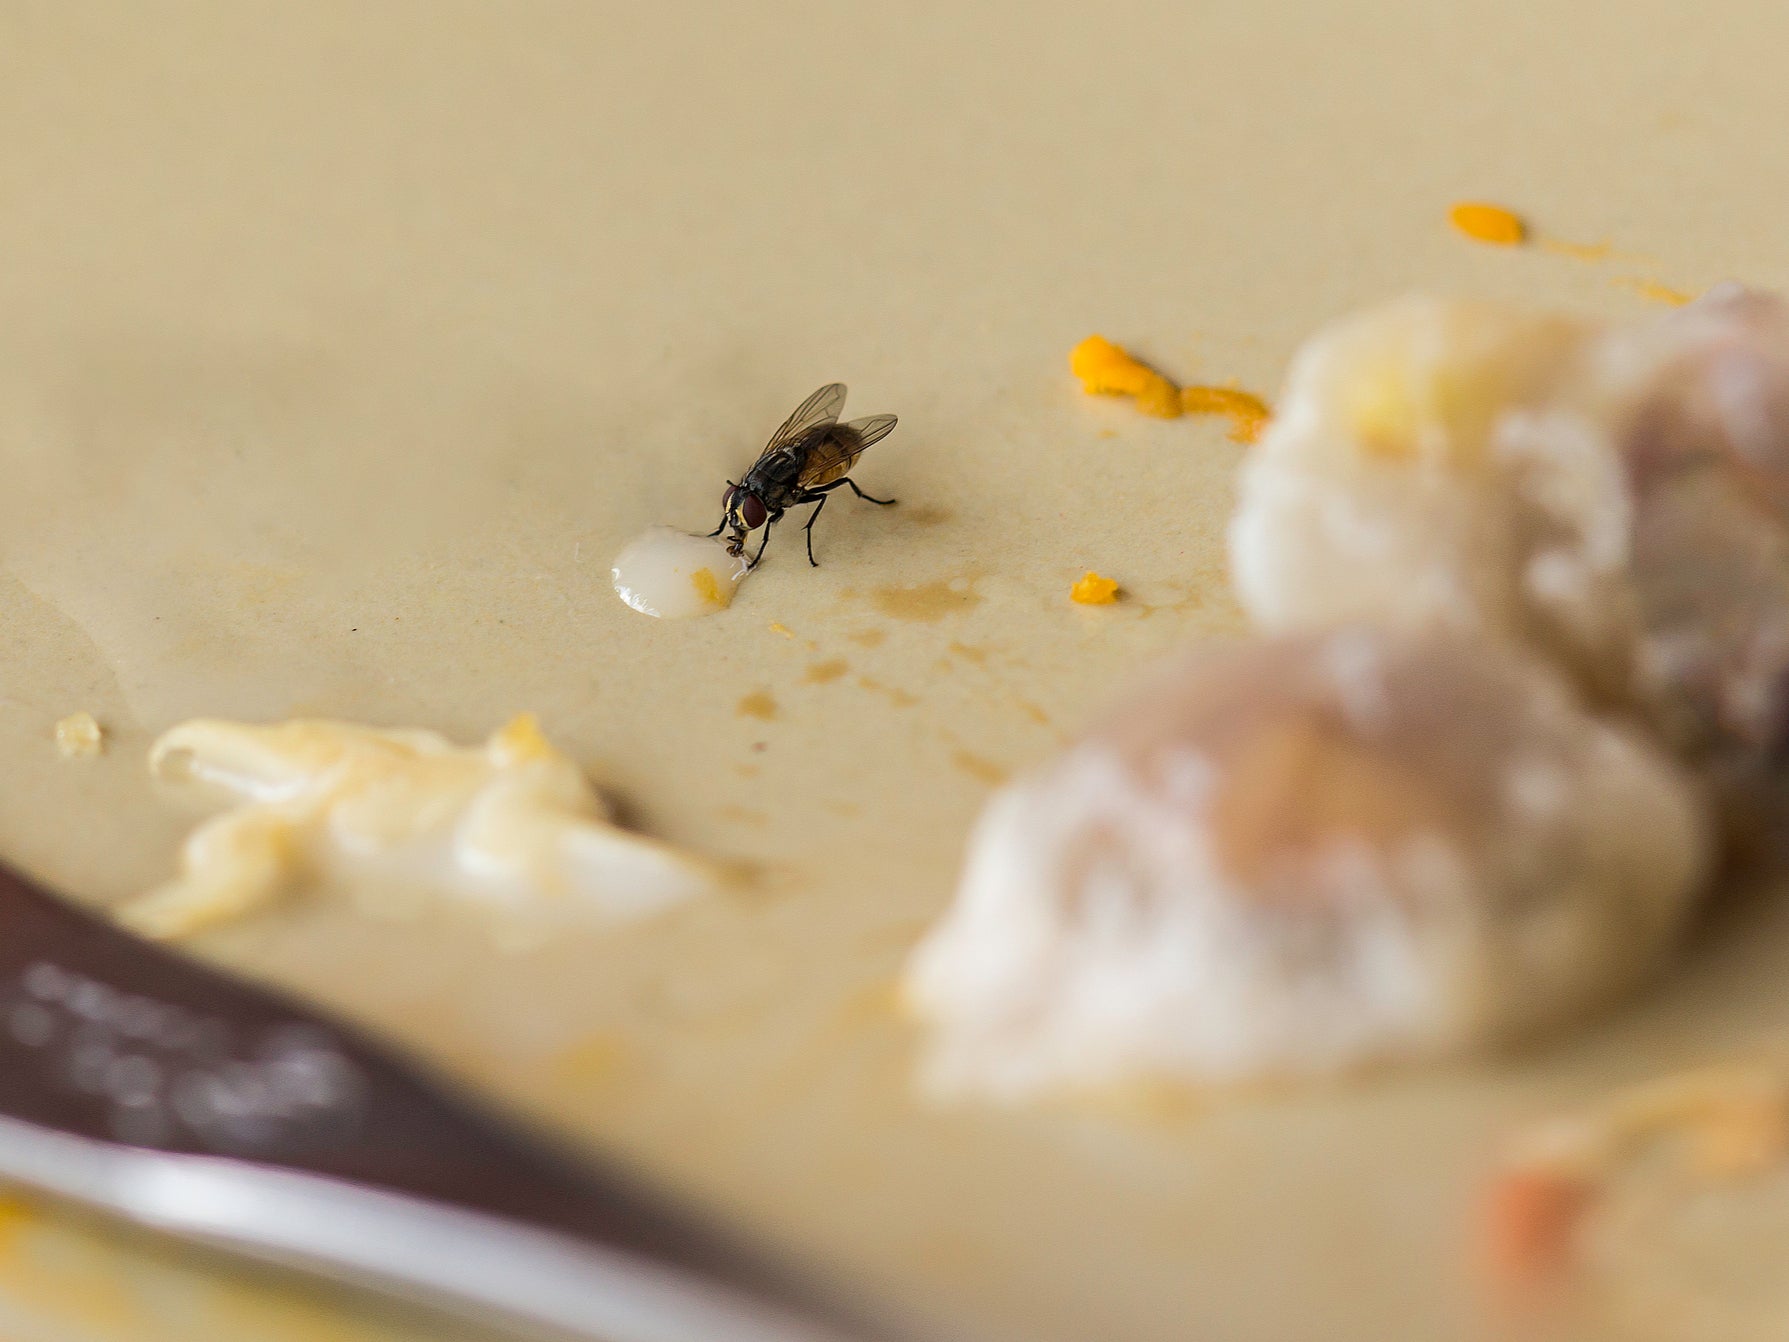 House flies may transmit disease causing pathogens